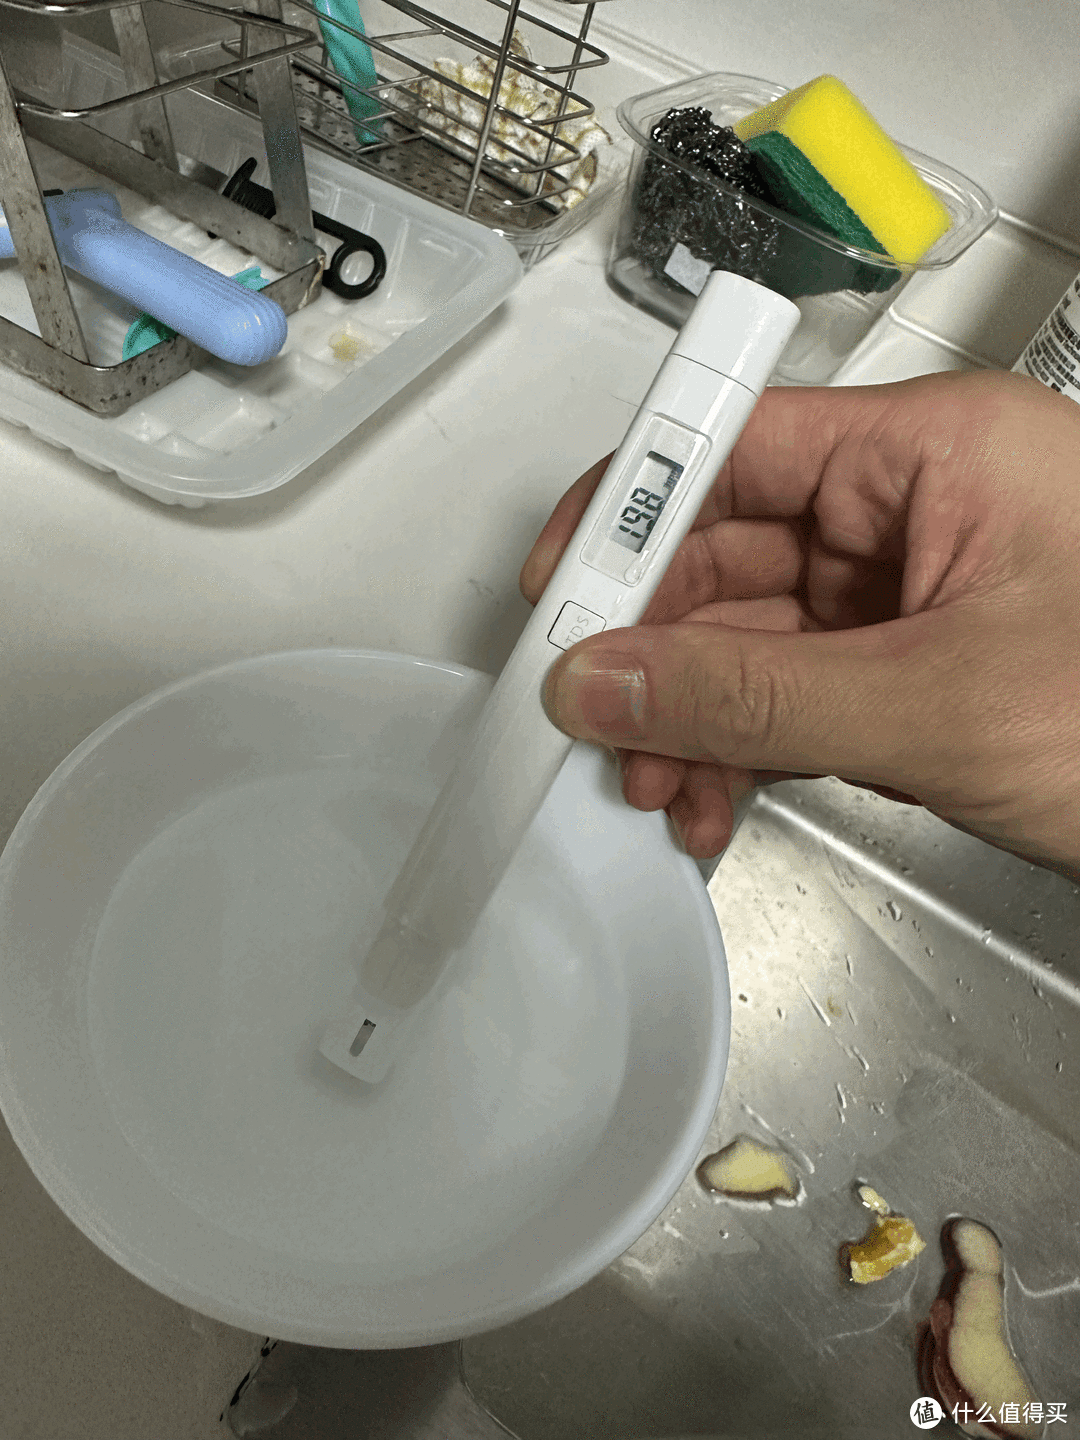 小米检测笔检测自来水水质。